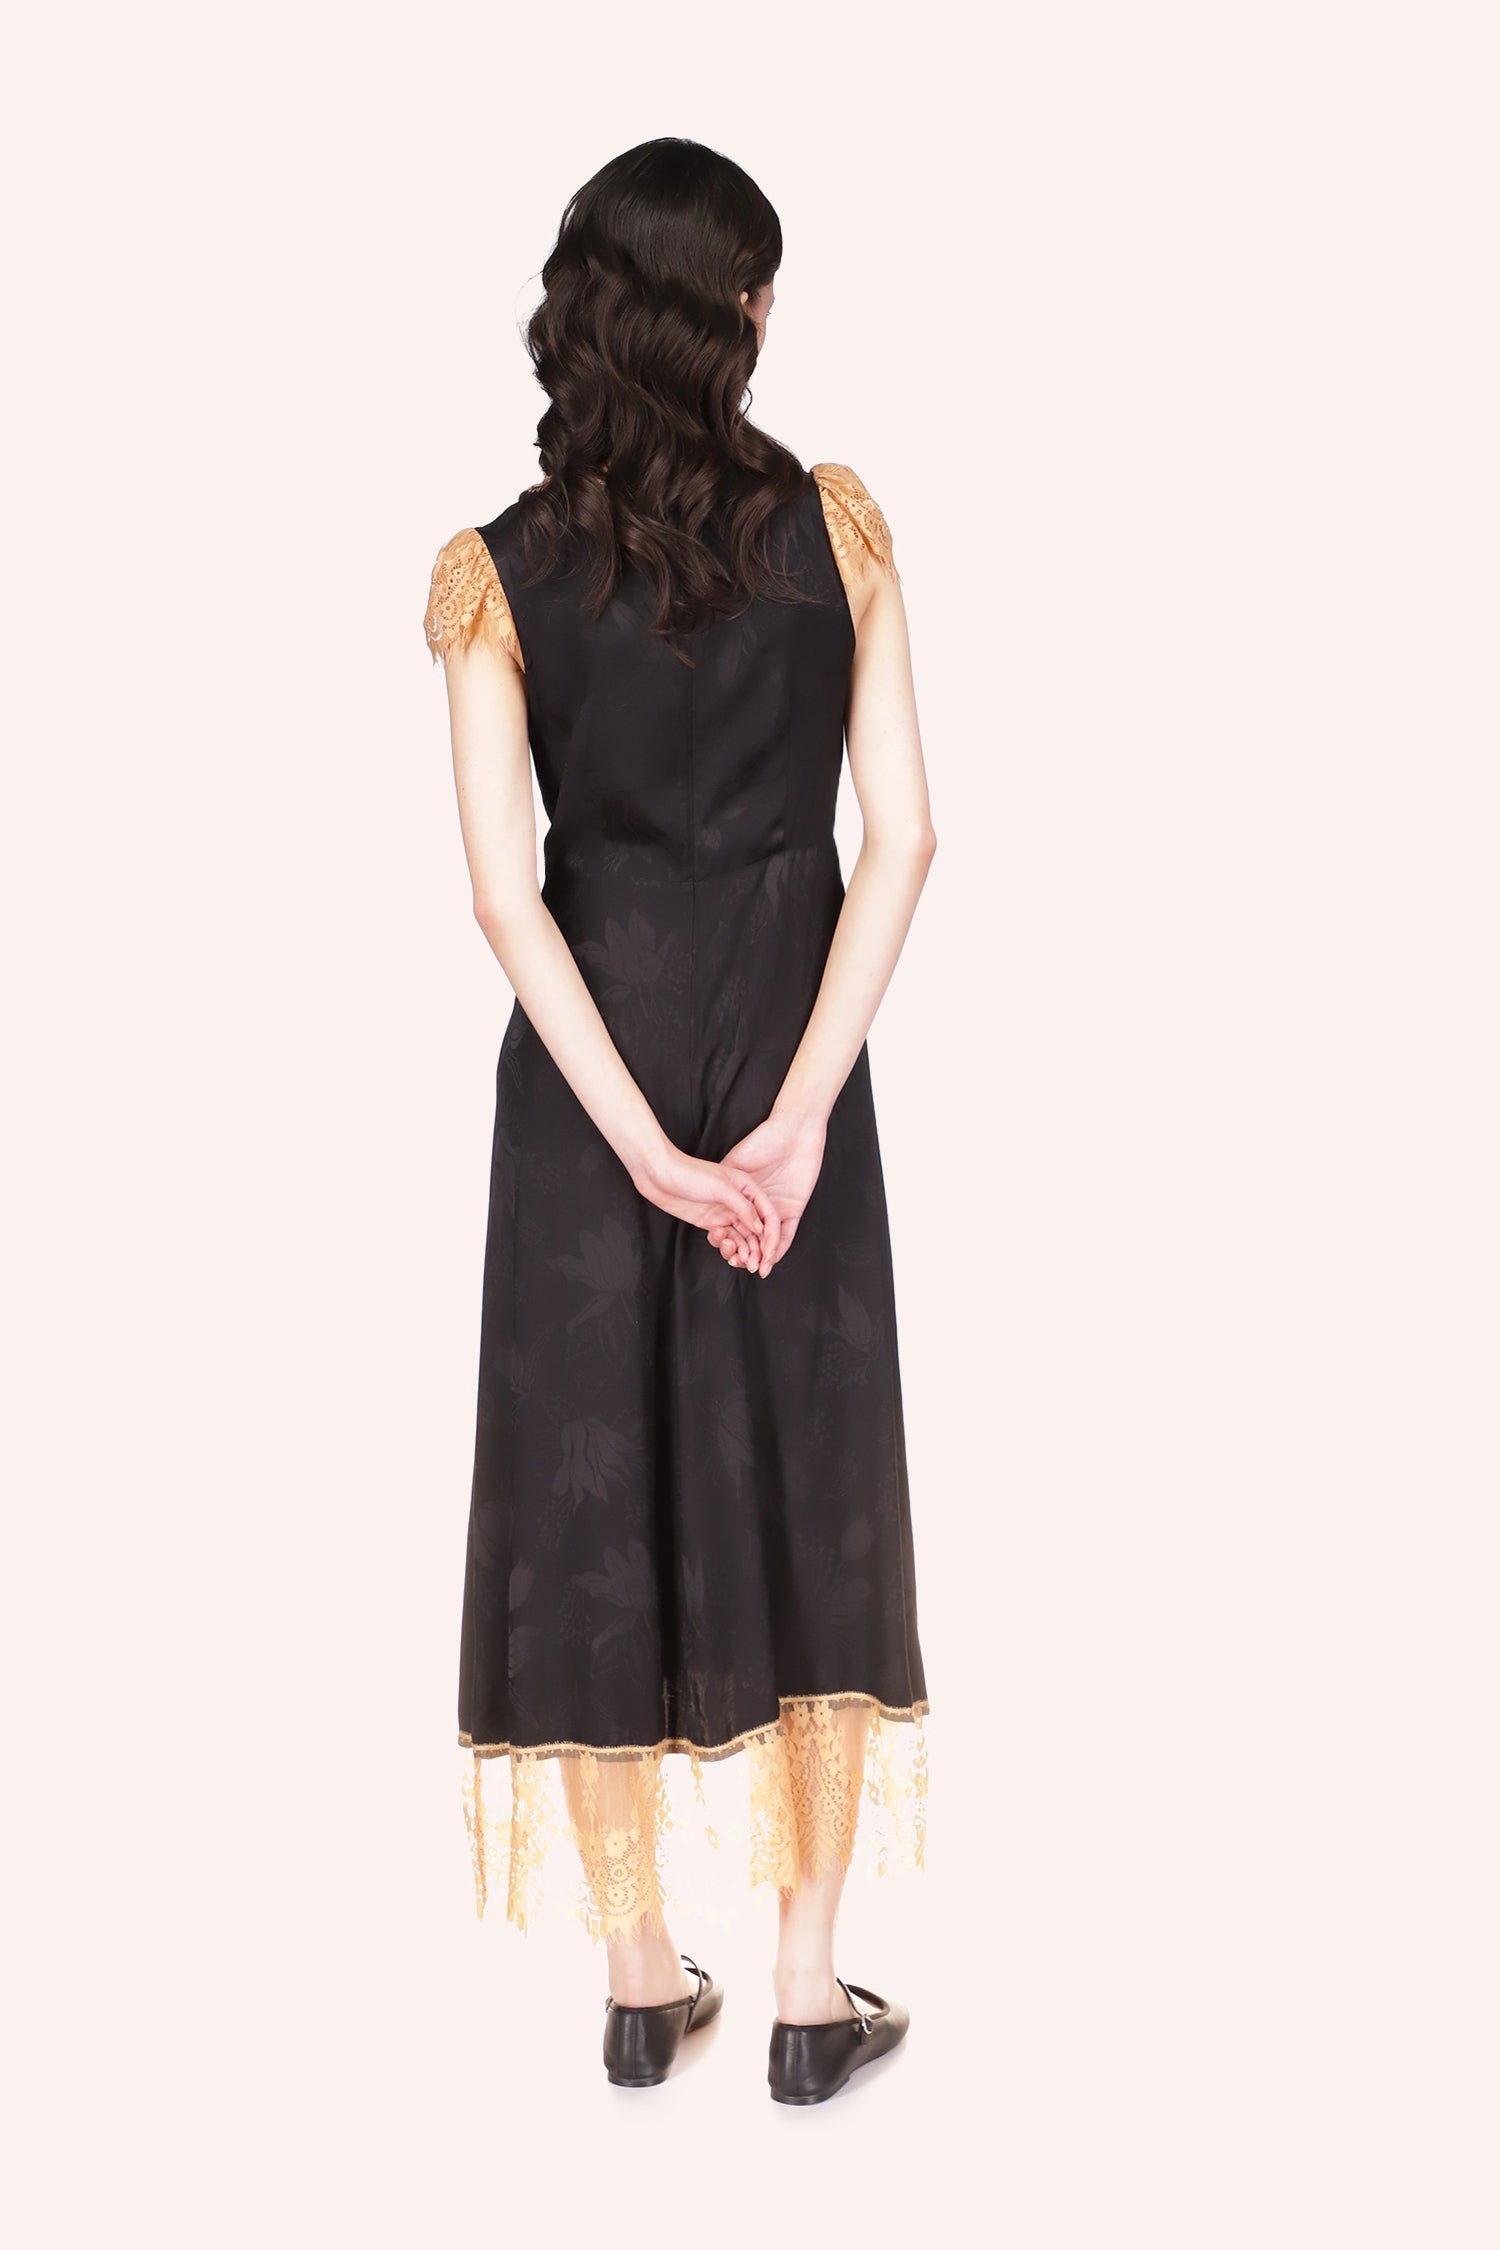 Floral Jacquard Long Sleeve Dress Black, slightly lighter dark floral design on the dark background